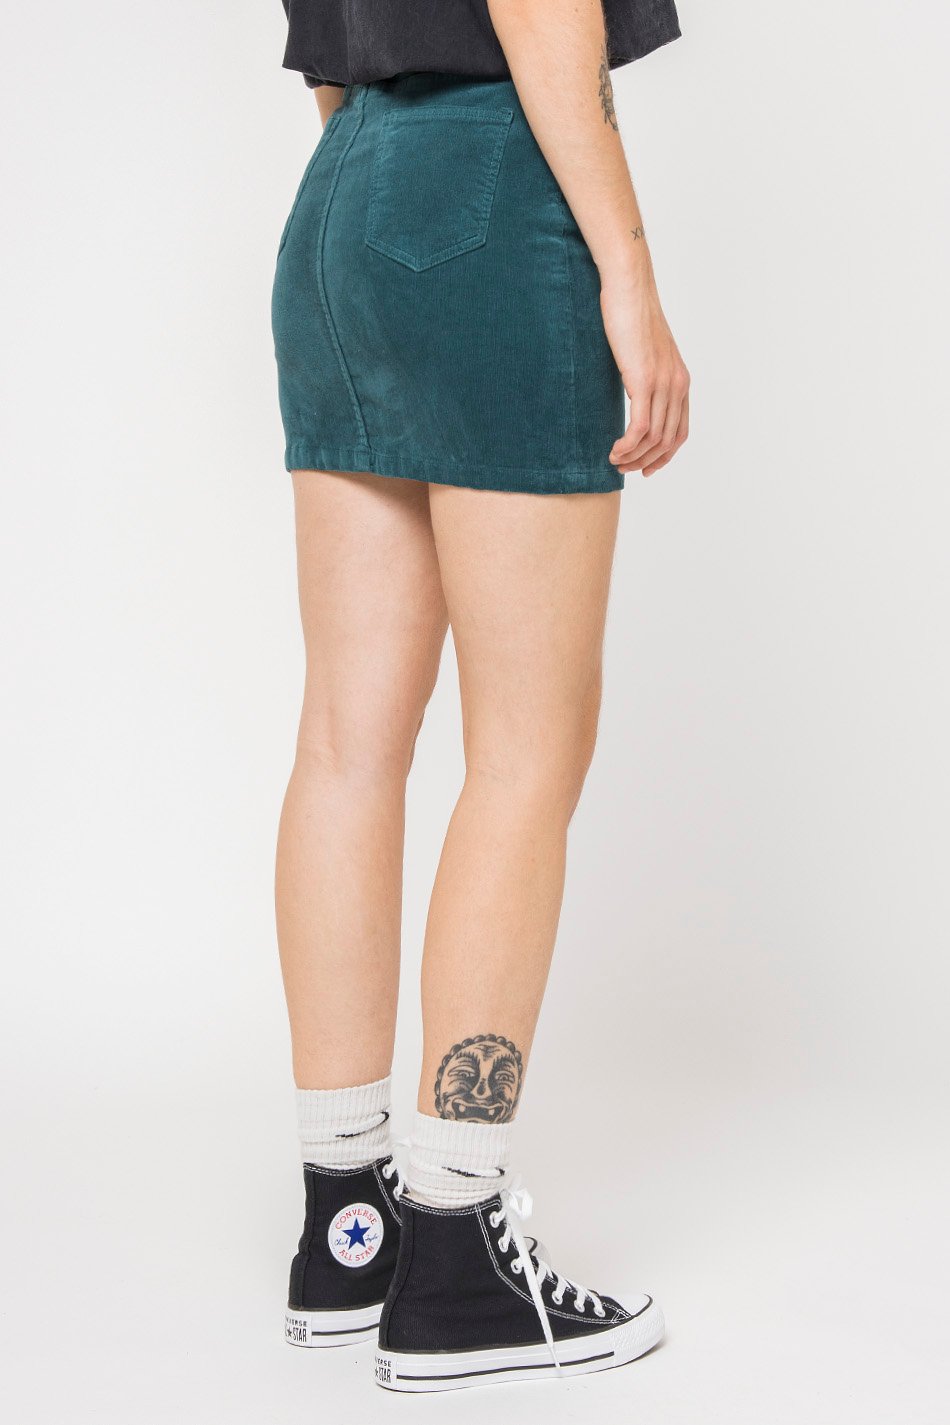 Minifalda de Pana Jade